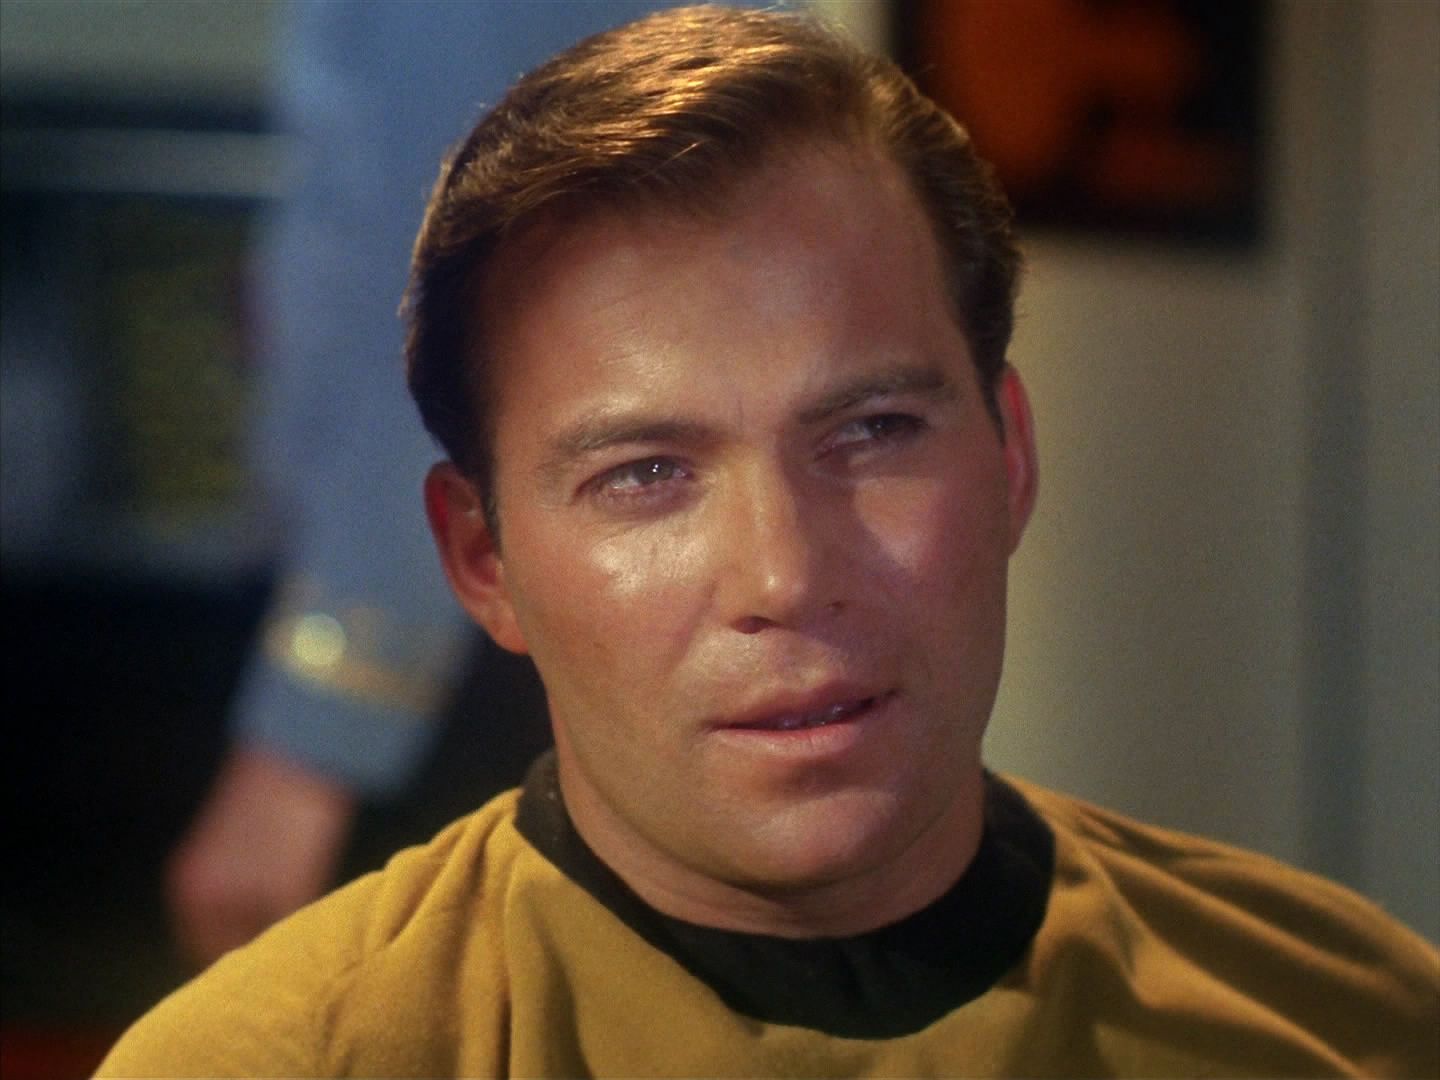 Kapitán Kirk má v posledních chvílích spásný nápad: bude bluffovat. Sděluje Balokovi, že každá pozemská loď veze látku korbomit, která při napadení zničí i útočníka. A bluff opravdu vyšel.